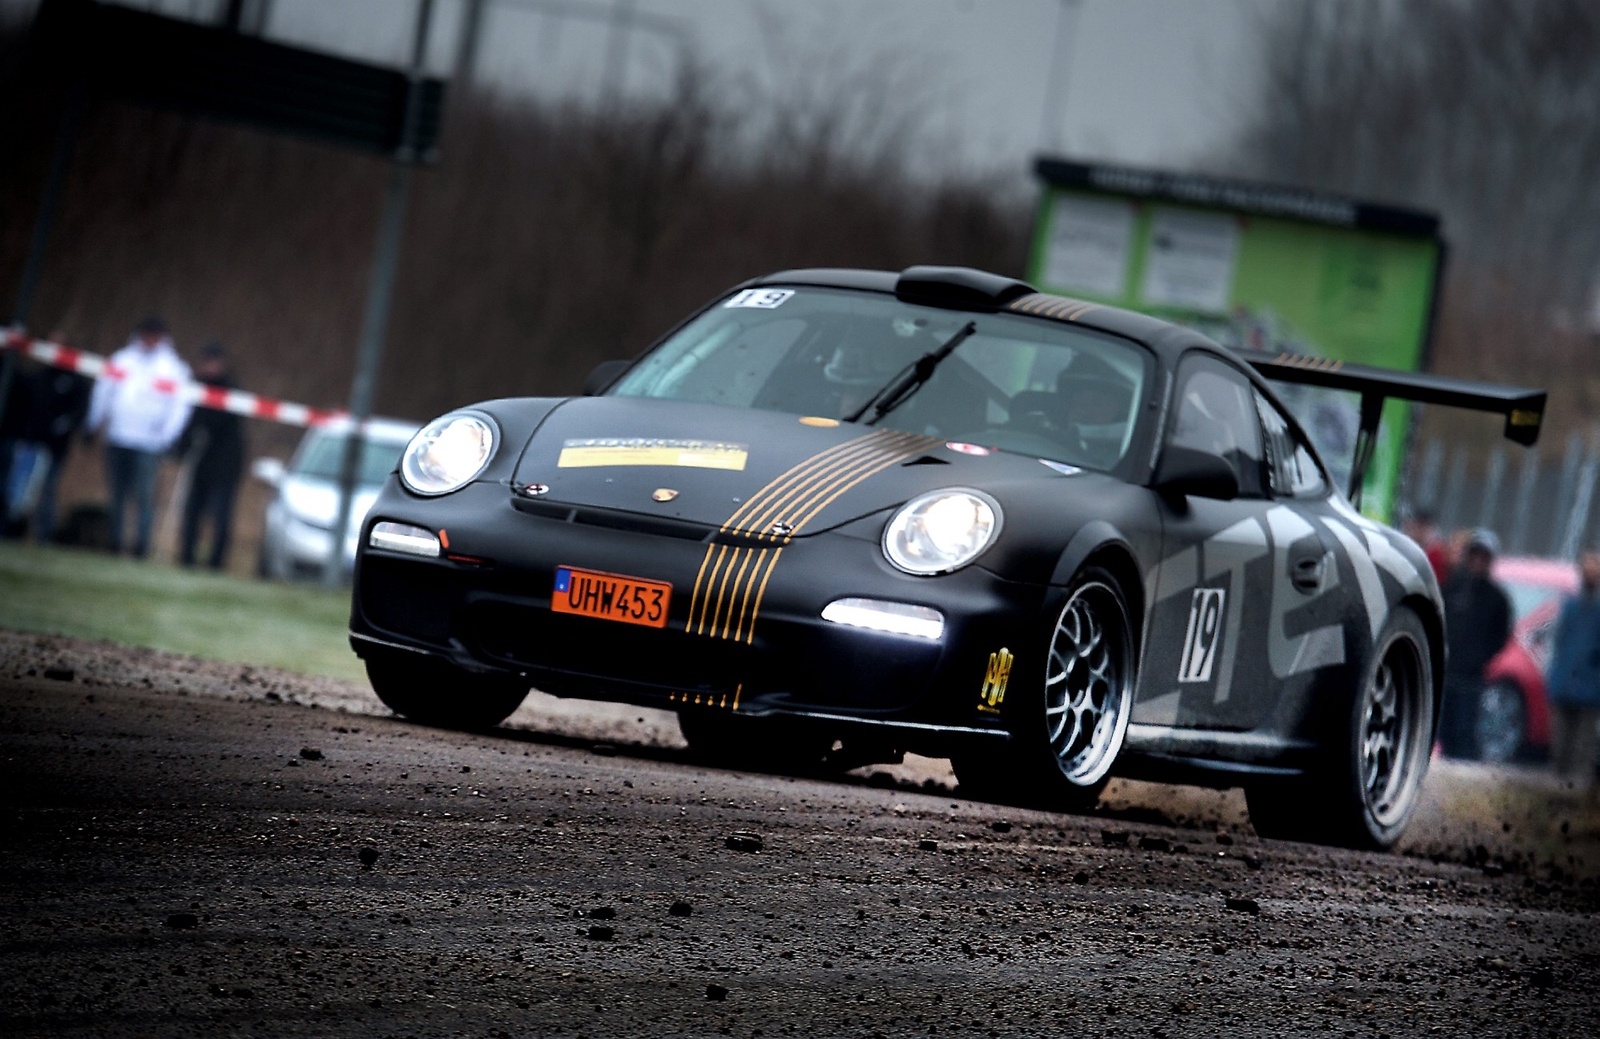 I fjorårets asfaltsprint i Hörby tog dalmasen Mats Myrsell sin häftiga och unika Porsche 997 GT3 till seger. Klarar han att upprepa den bravaden på söndag?